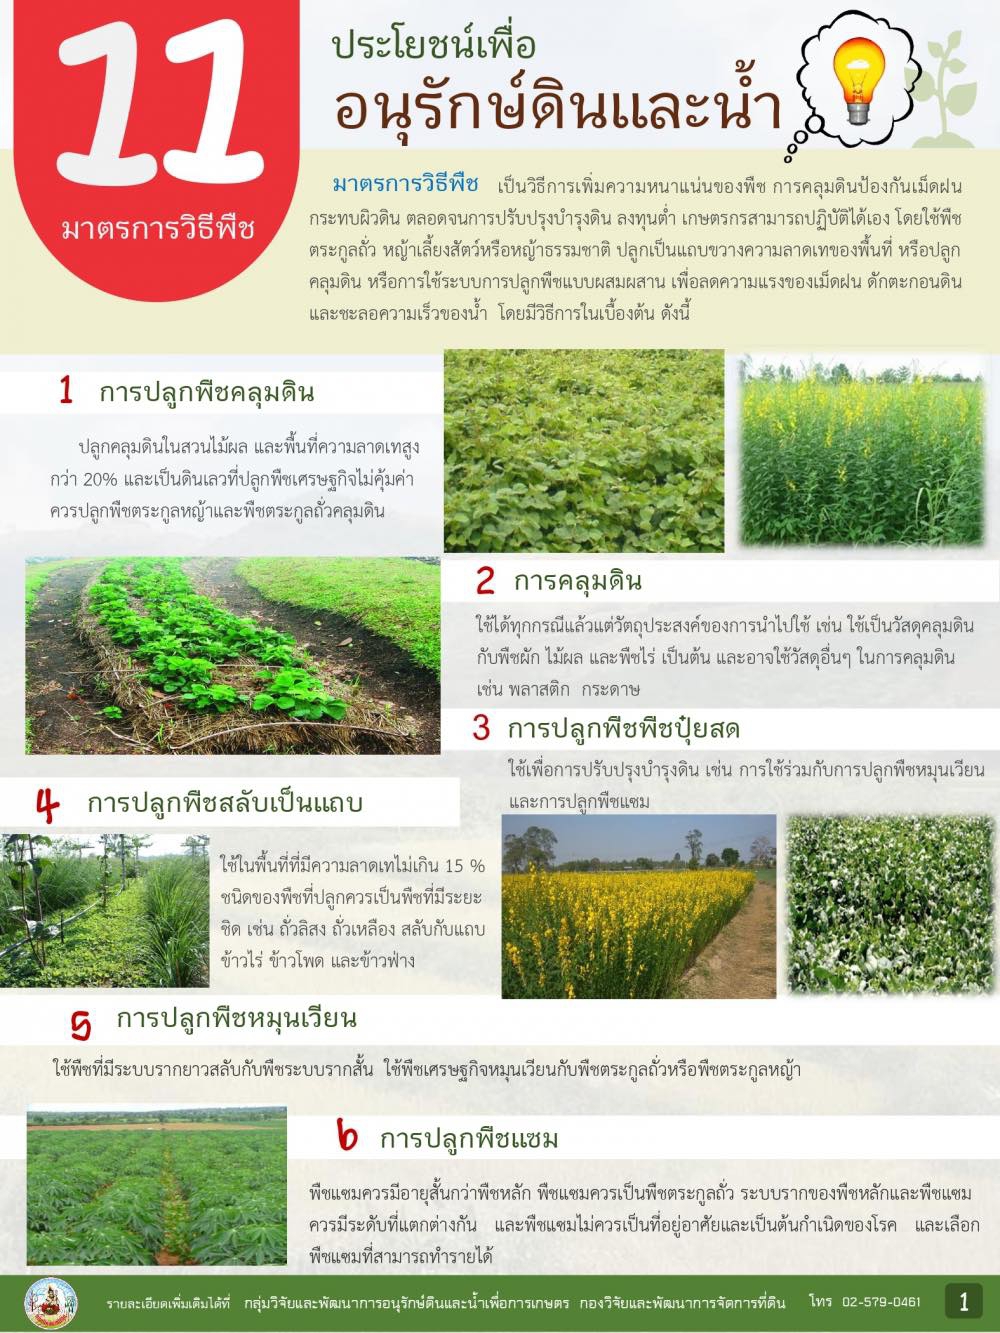 11 มาตราการวิธีพืช...ประโยชน์เพื่ออนุรักษ์ดินและน้ำ